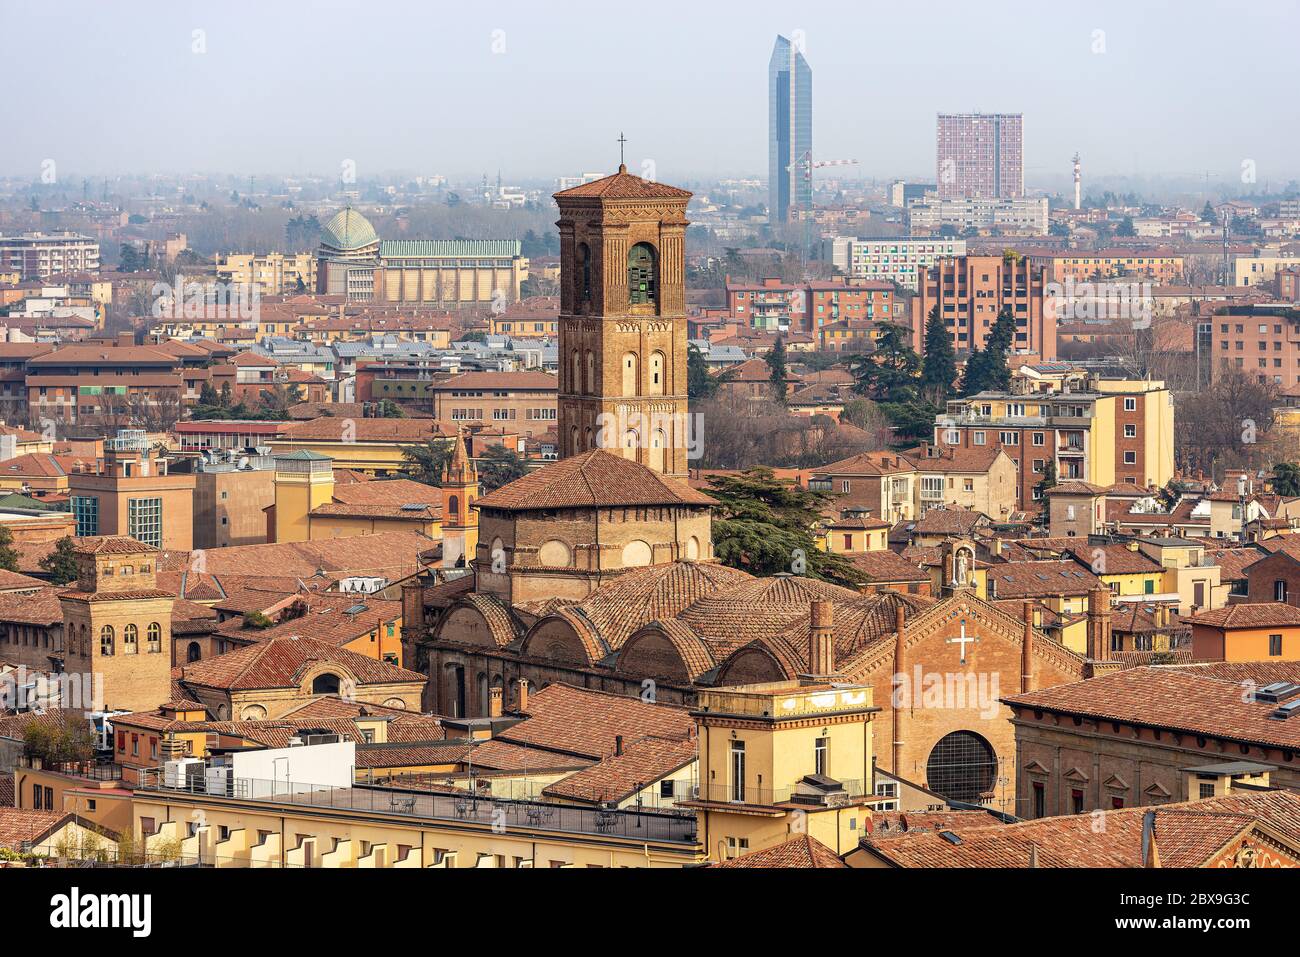 Il paesaggio urbano del centro di Bologna visto dal campanile della Cattedrale Metropolitana di San Pietro con la Basilica di San Giacomo maggiore. Foto Stock